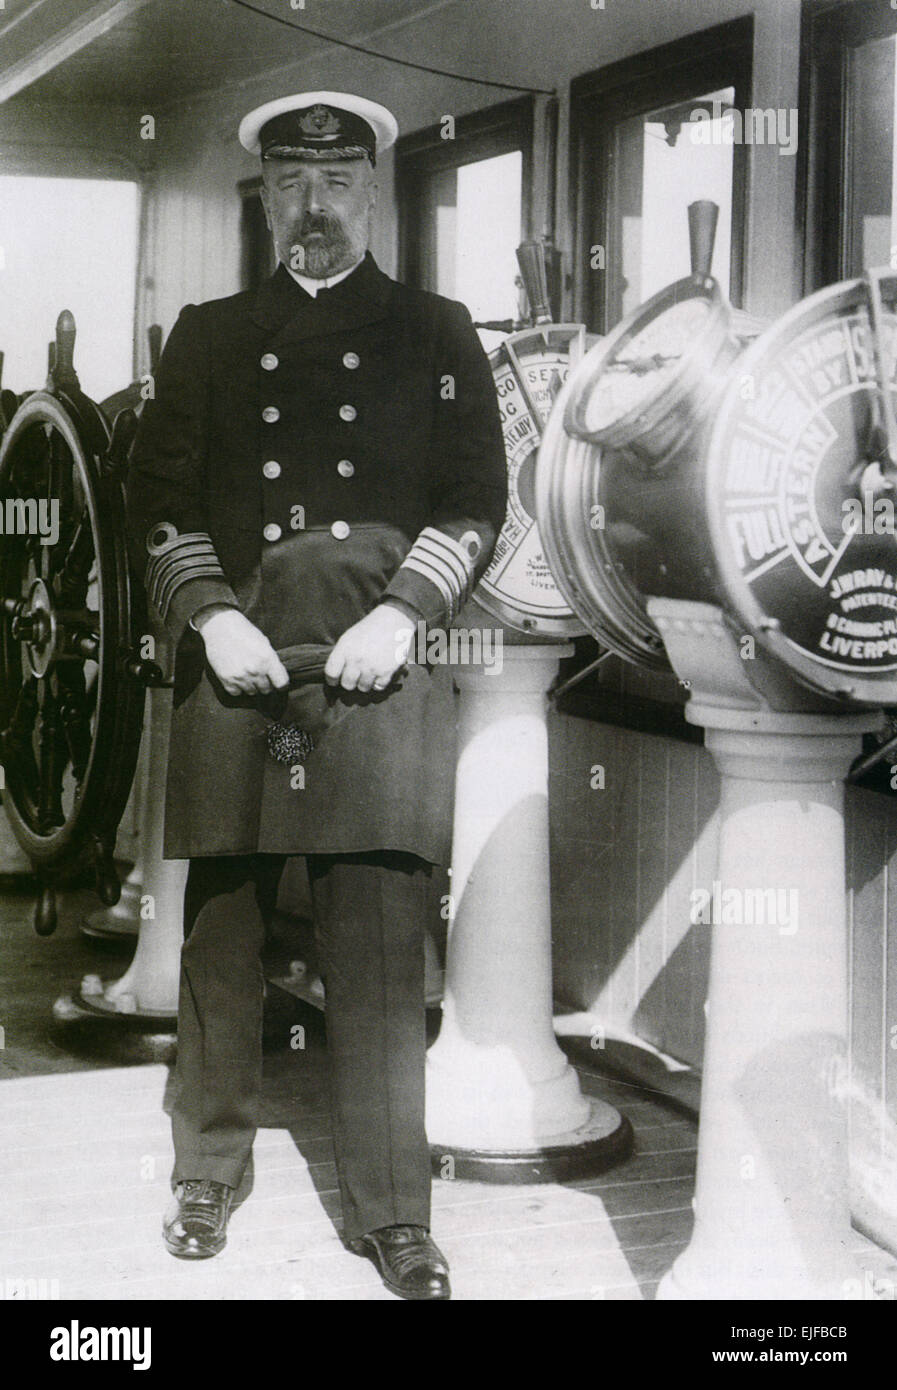 EDWARD SMITH (1850-1912) officier de la réserve navale anglaise comme le capitaine du Titanic en 1912 Banque D'Images